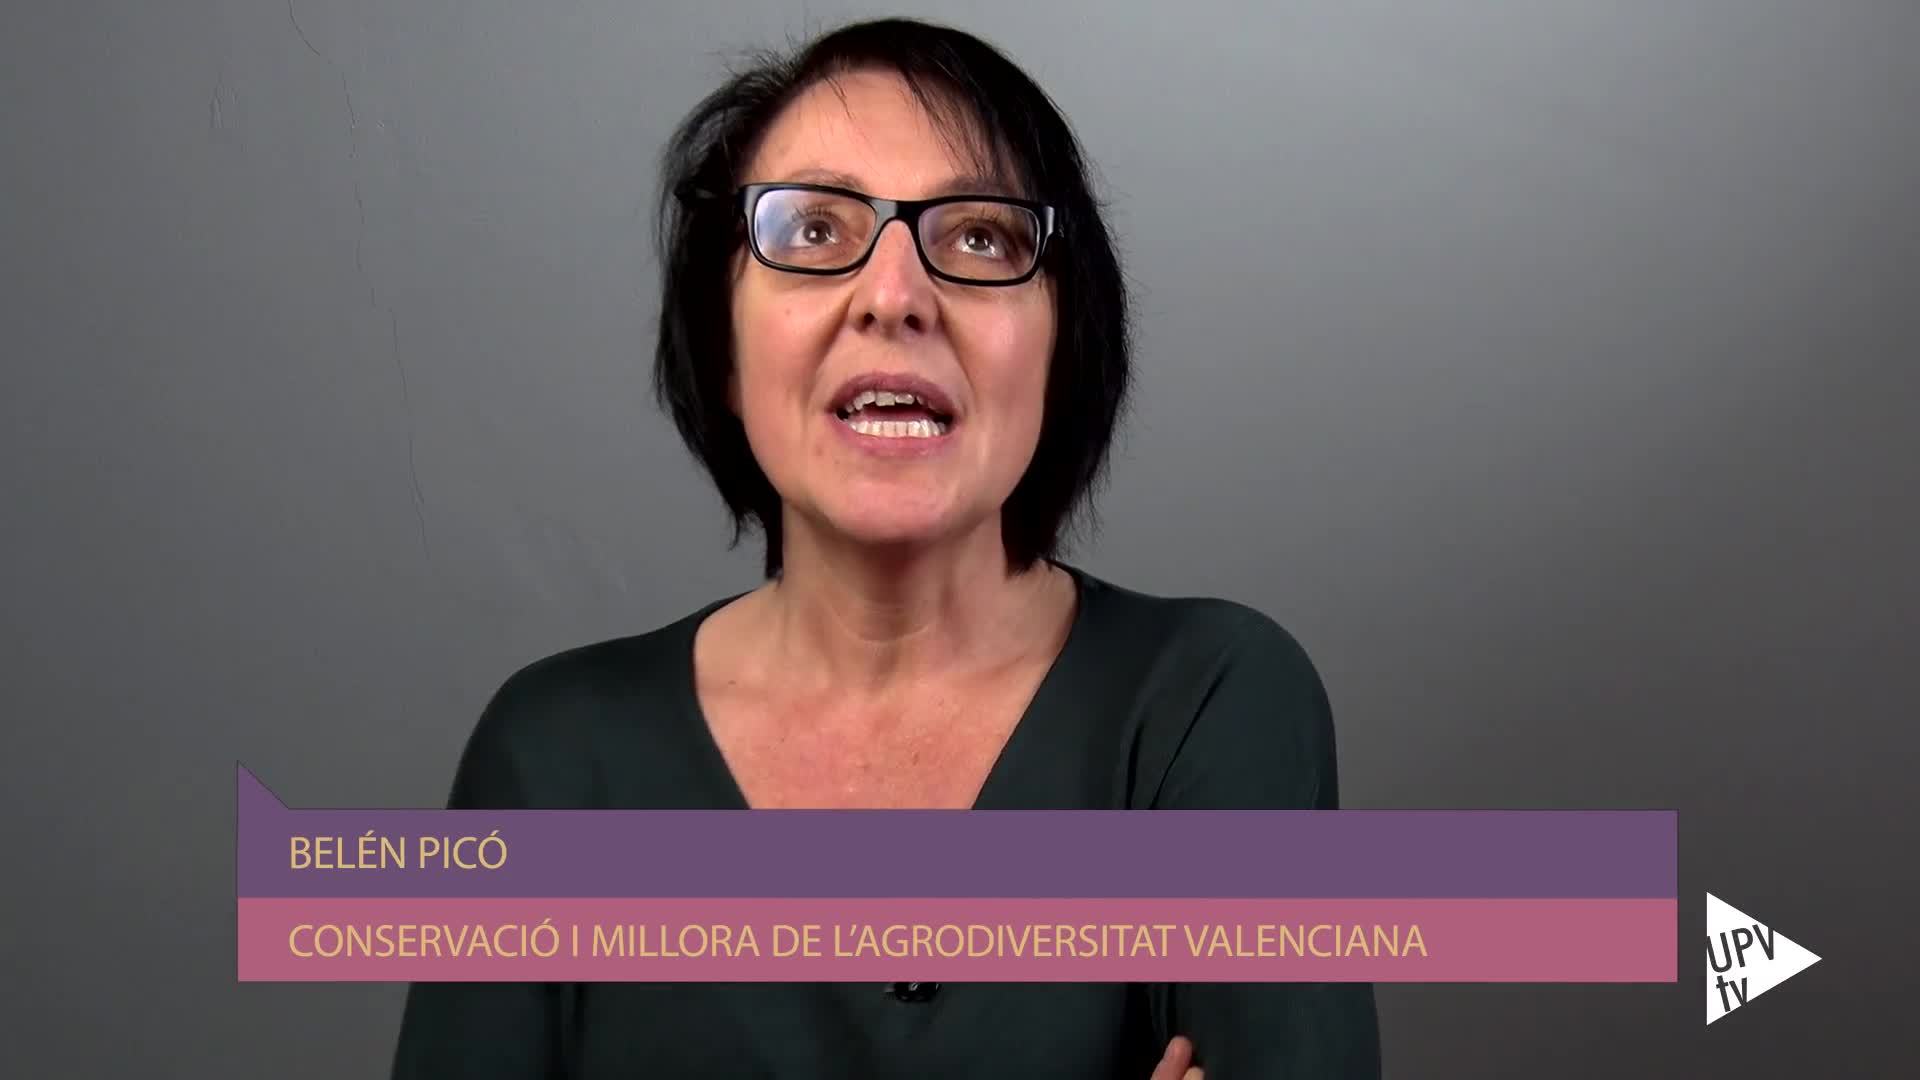 11-02-2019 María Belén Picó Sirvent